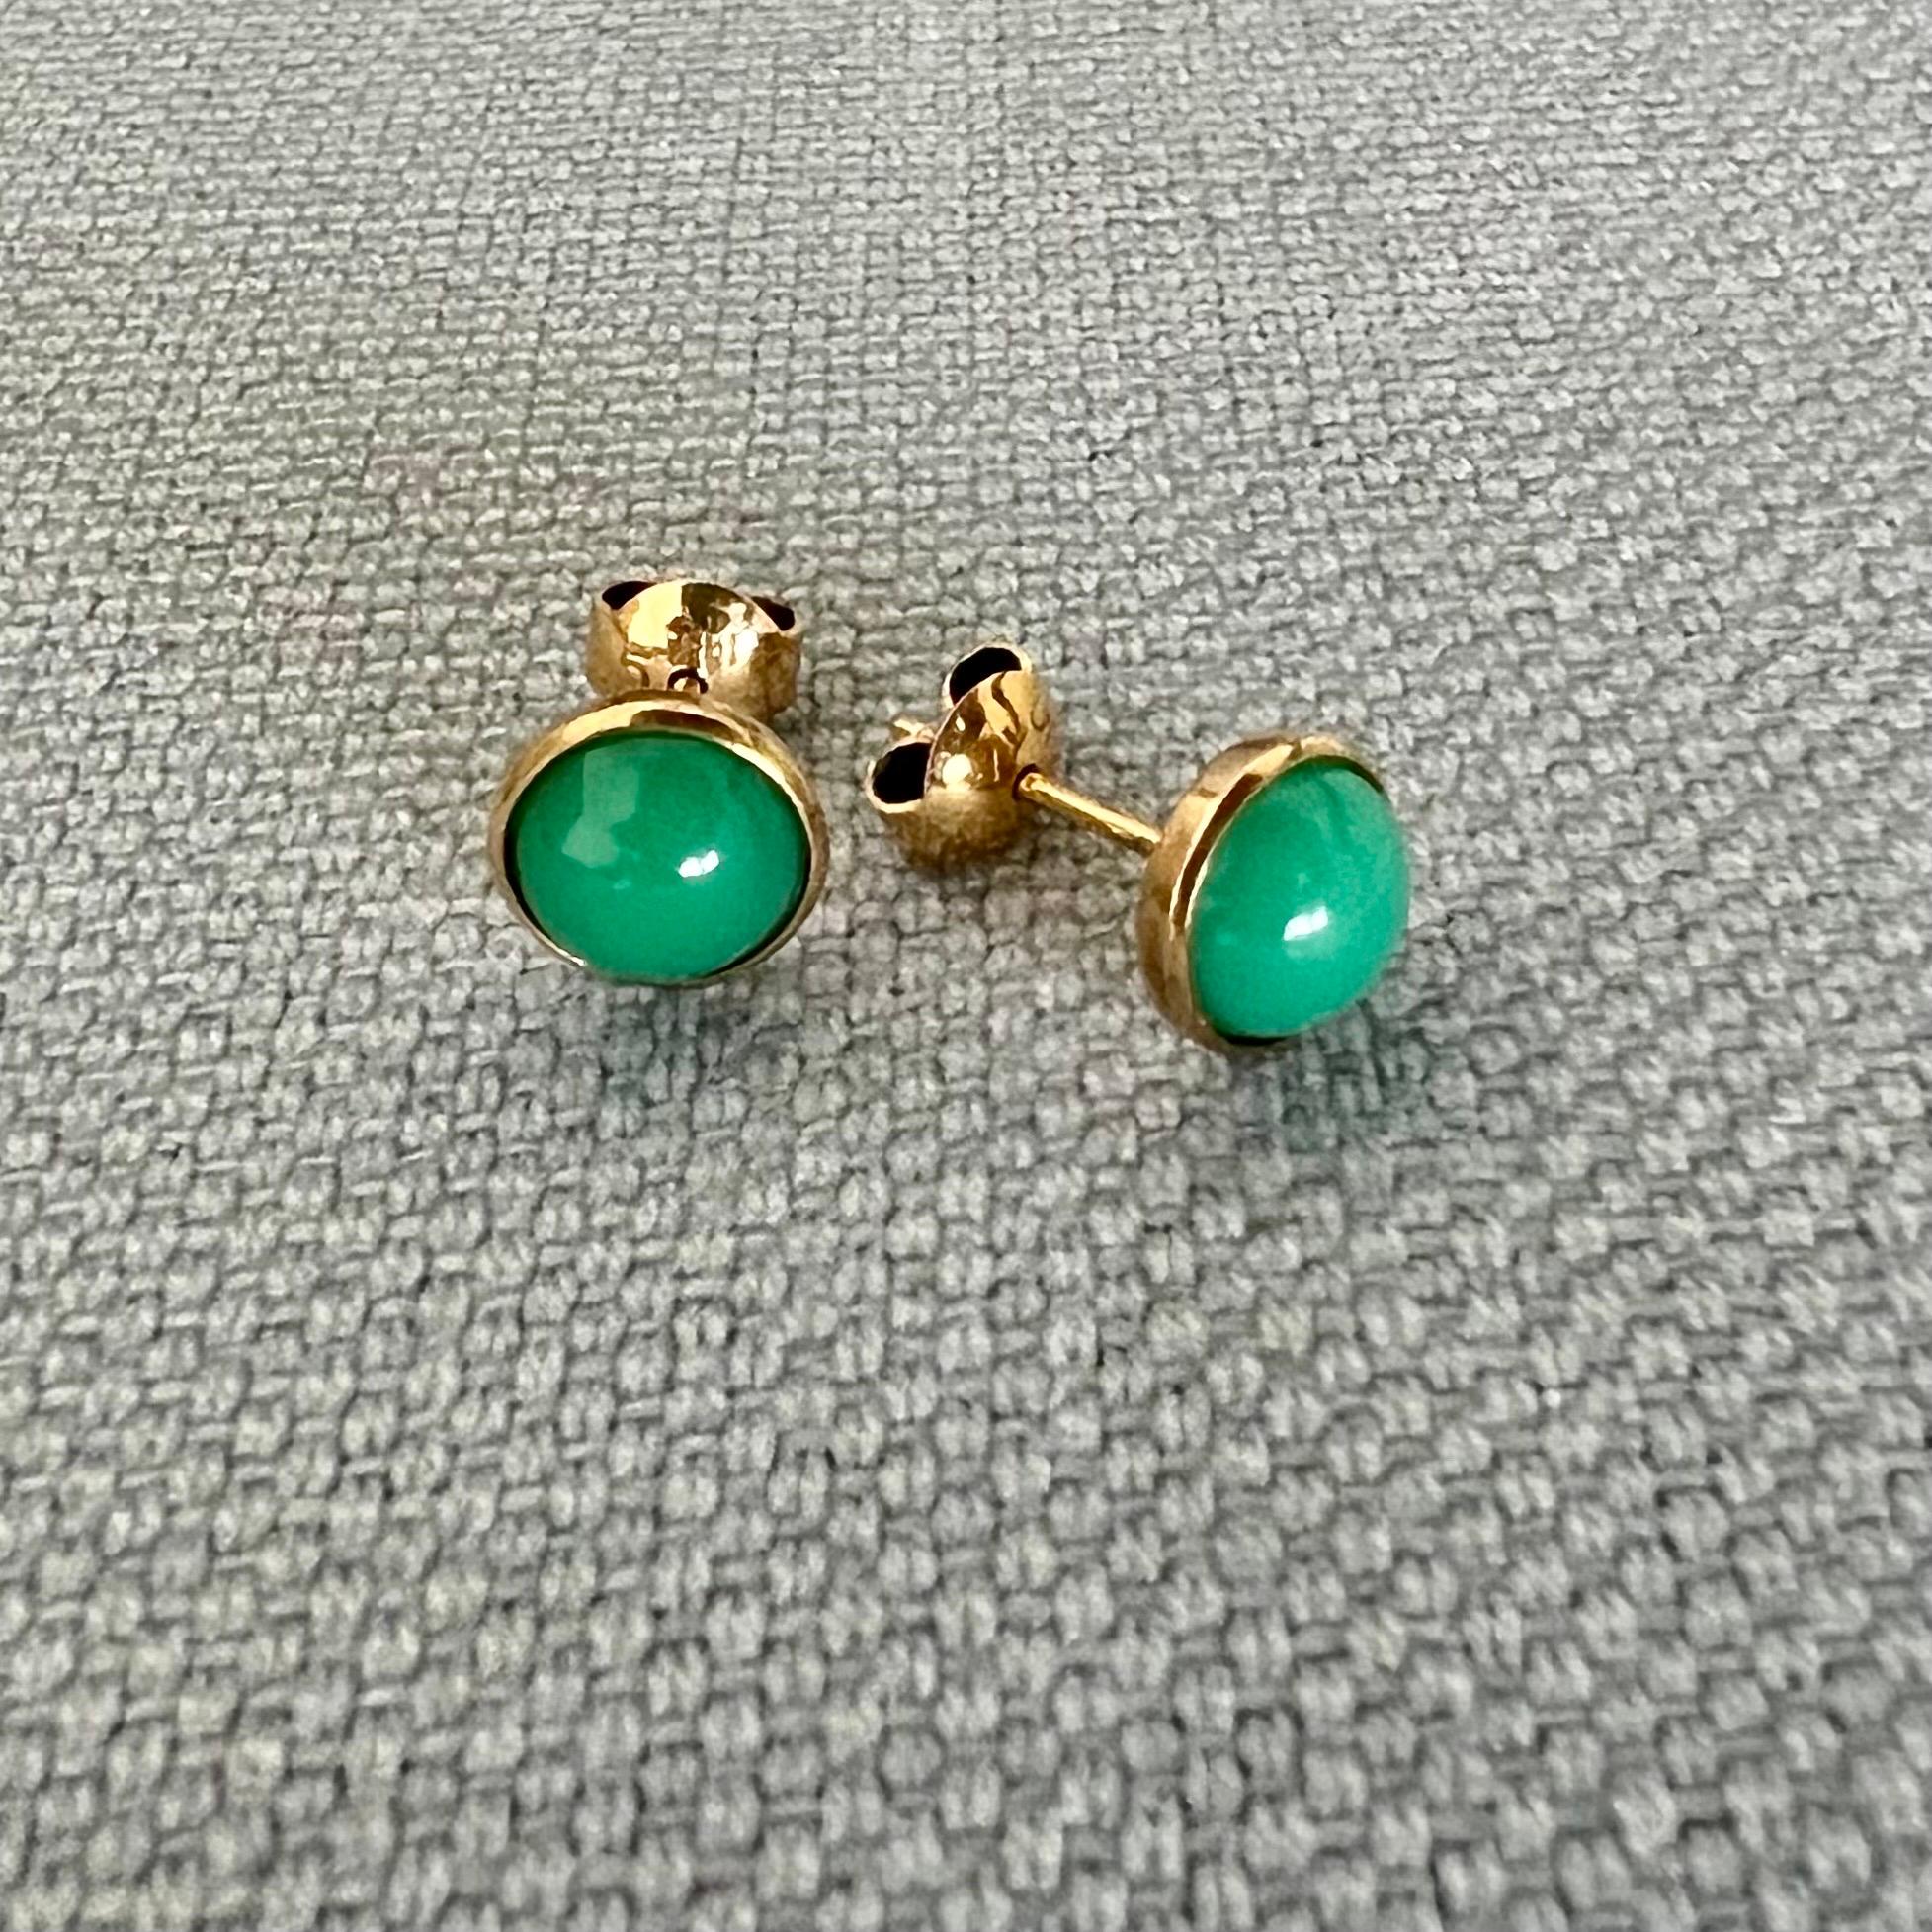 Une magnifique paire de délices verts -  ces boucles d'oreilles vintage en jade et or. Les clous en jade naturel sont sertis dans une monture en or 14 carats. Les clous sont ornés d'une pierre ronde cabochon en jade vert. Les pierres de jade ont une